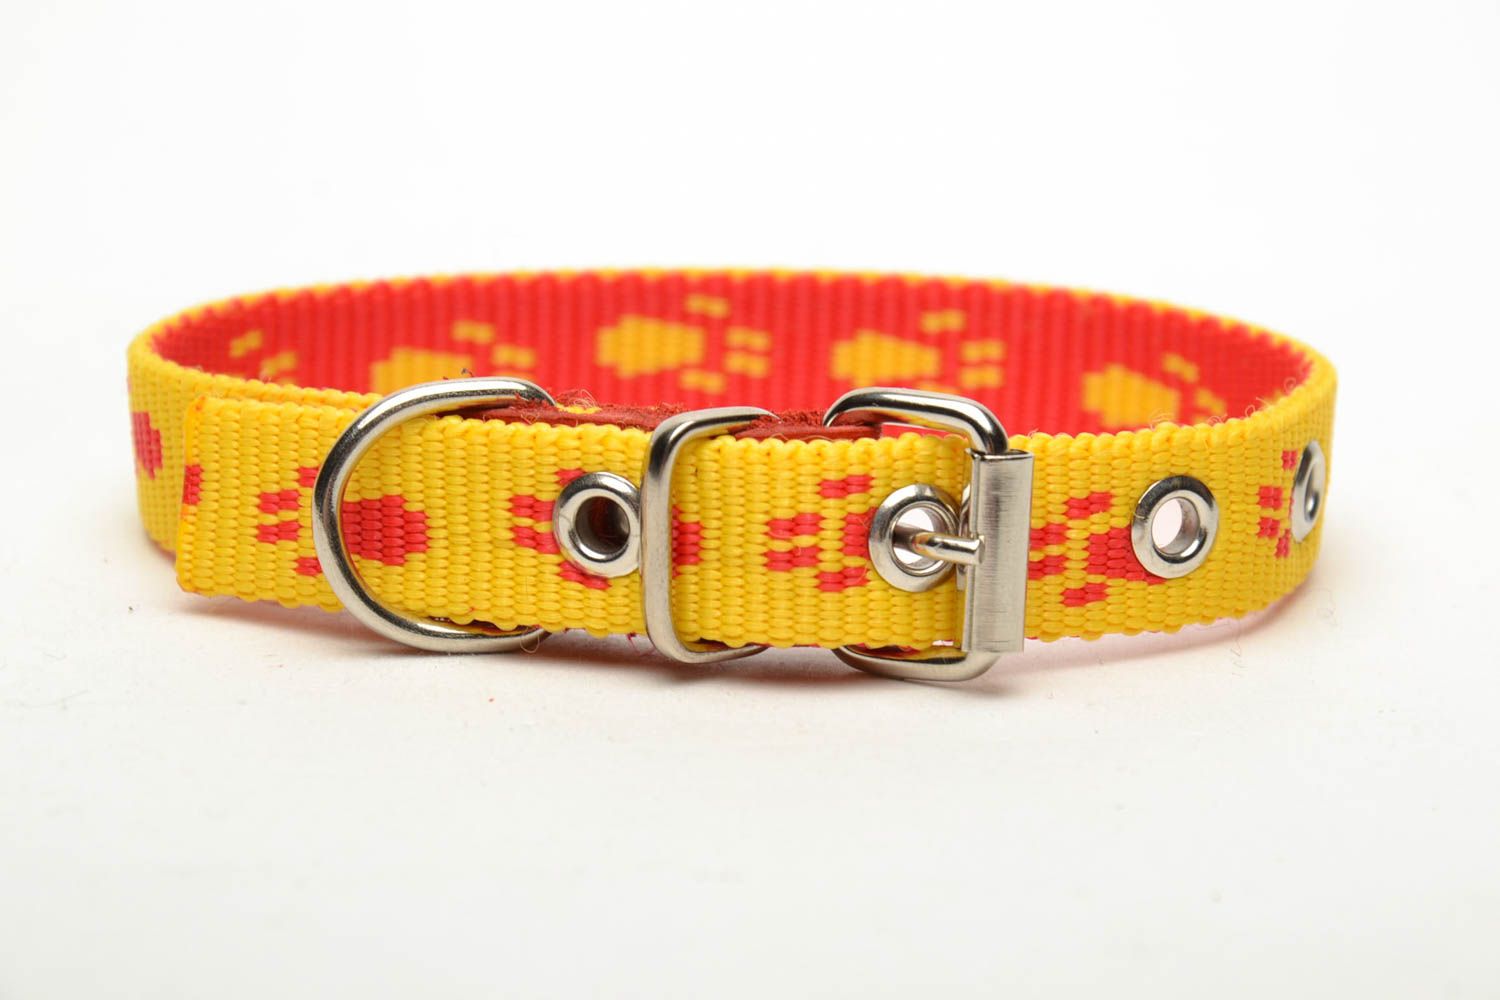 Textil Halsband für Hund in Gelb foto 2